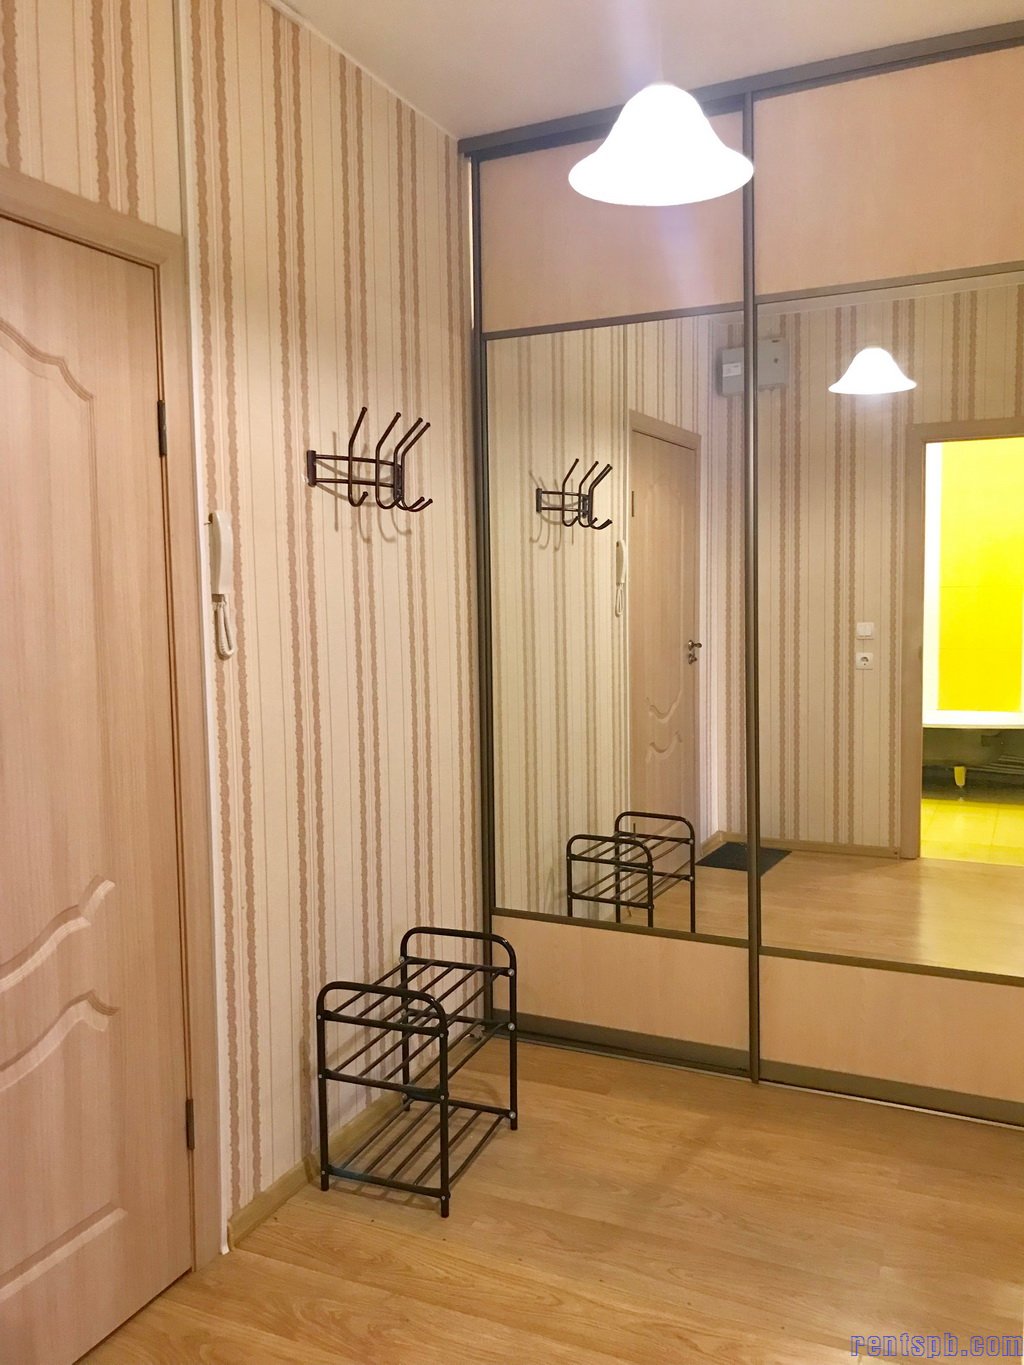 Сдается 1 квартира в новом дому у метро Дыбенко